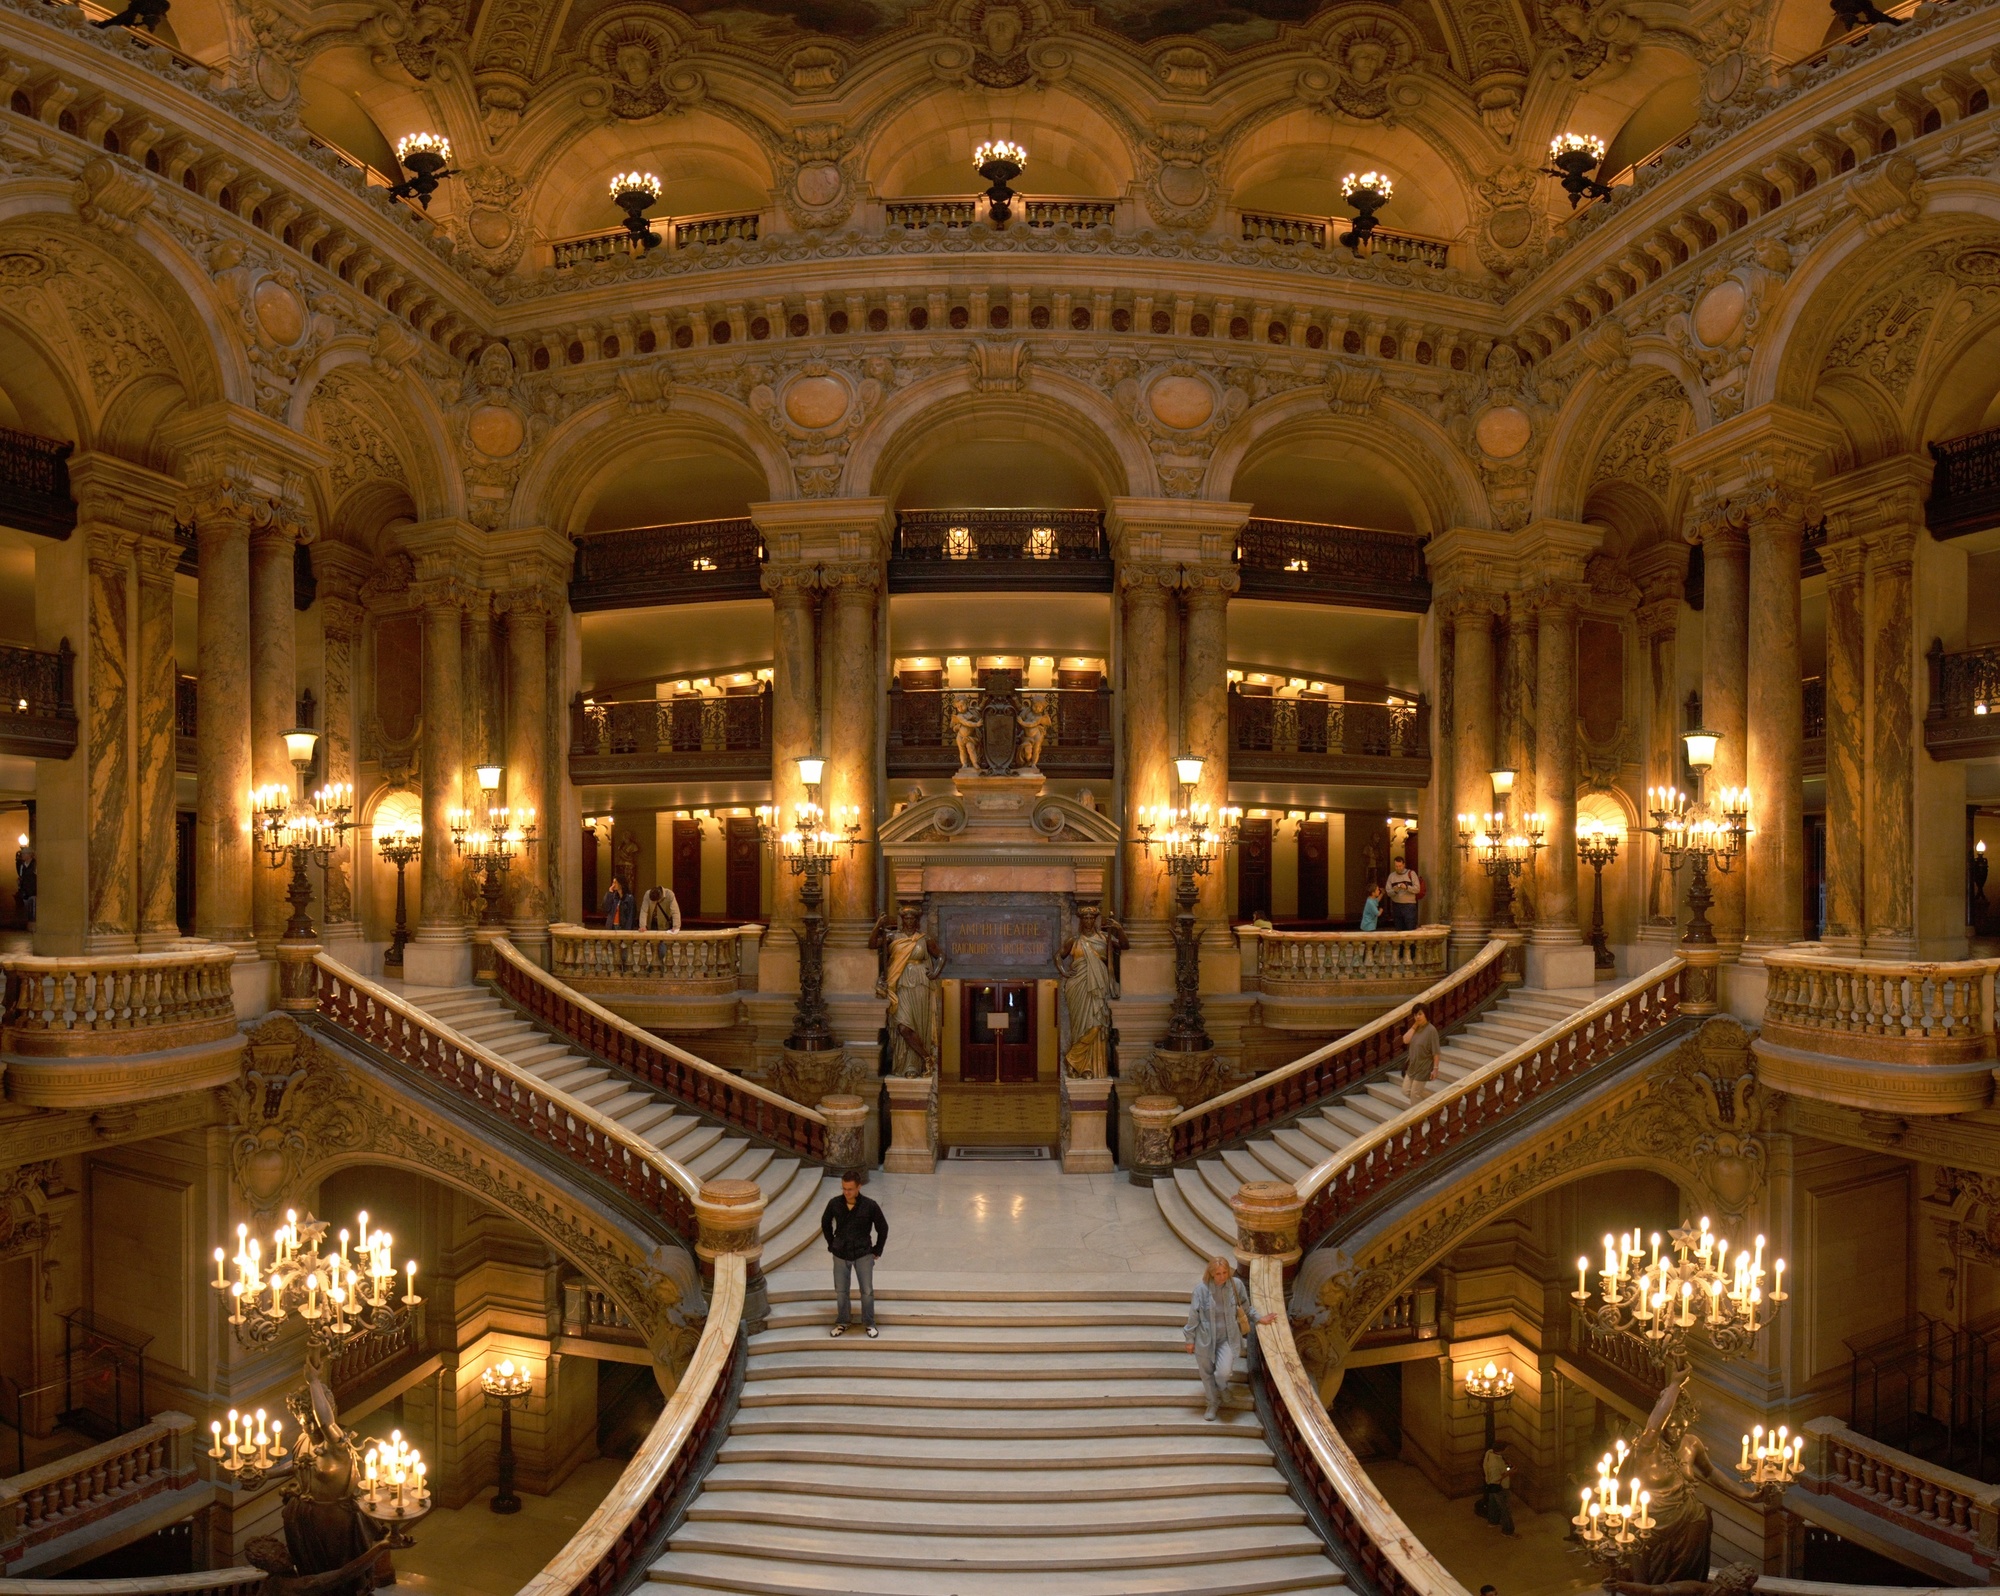 Вестибюль главной лестницы Гранд Опера. Париж. Источник https://upload.wikimedia.org/